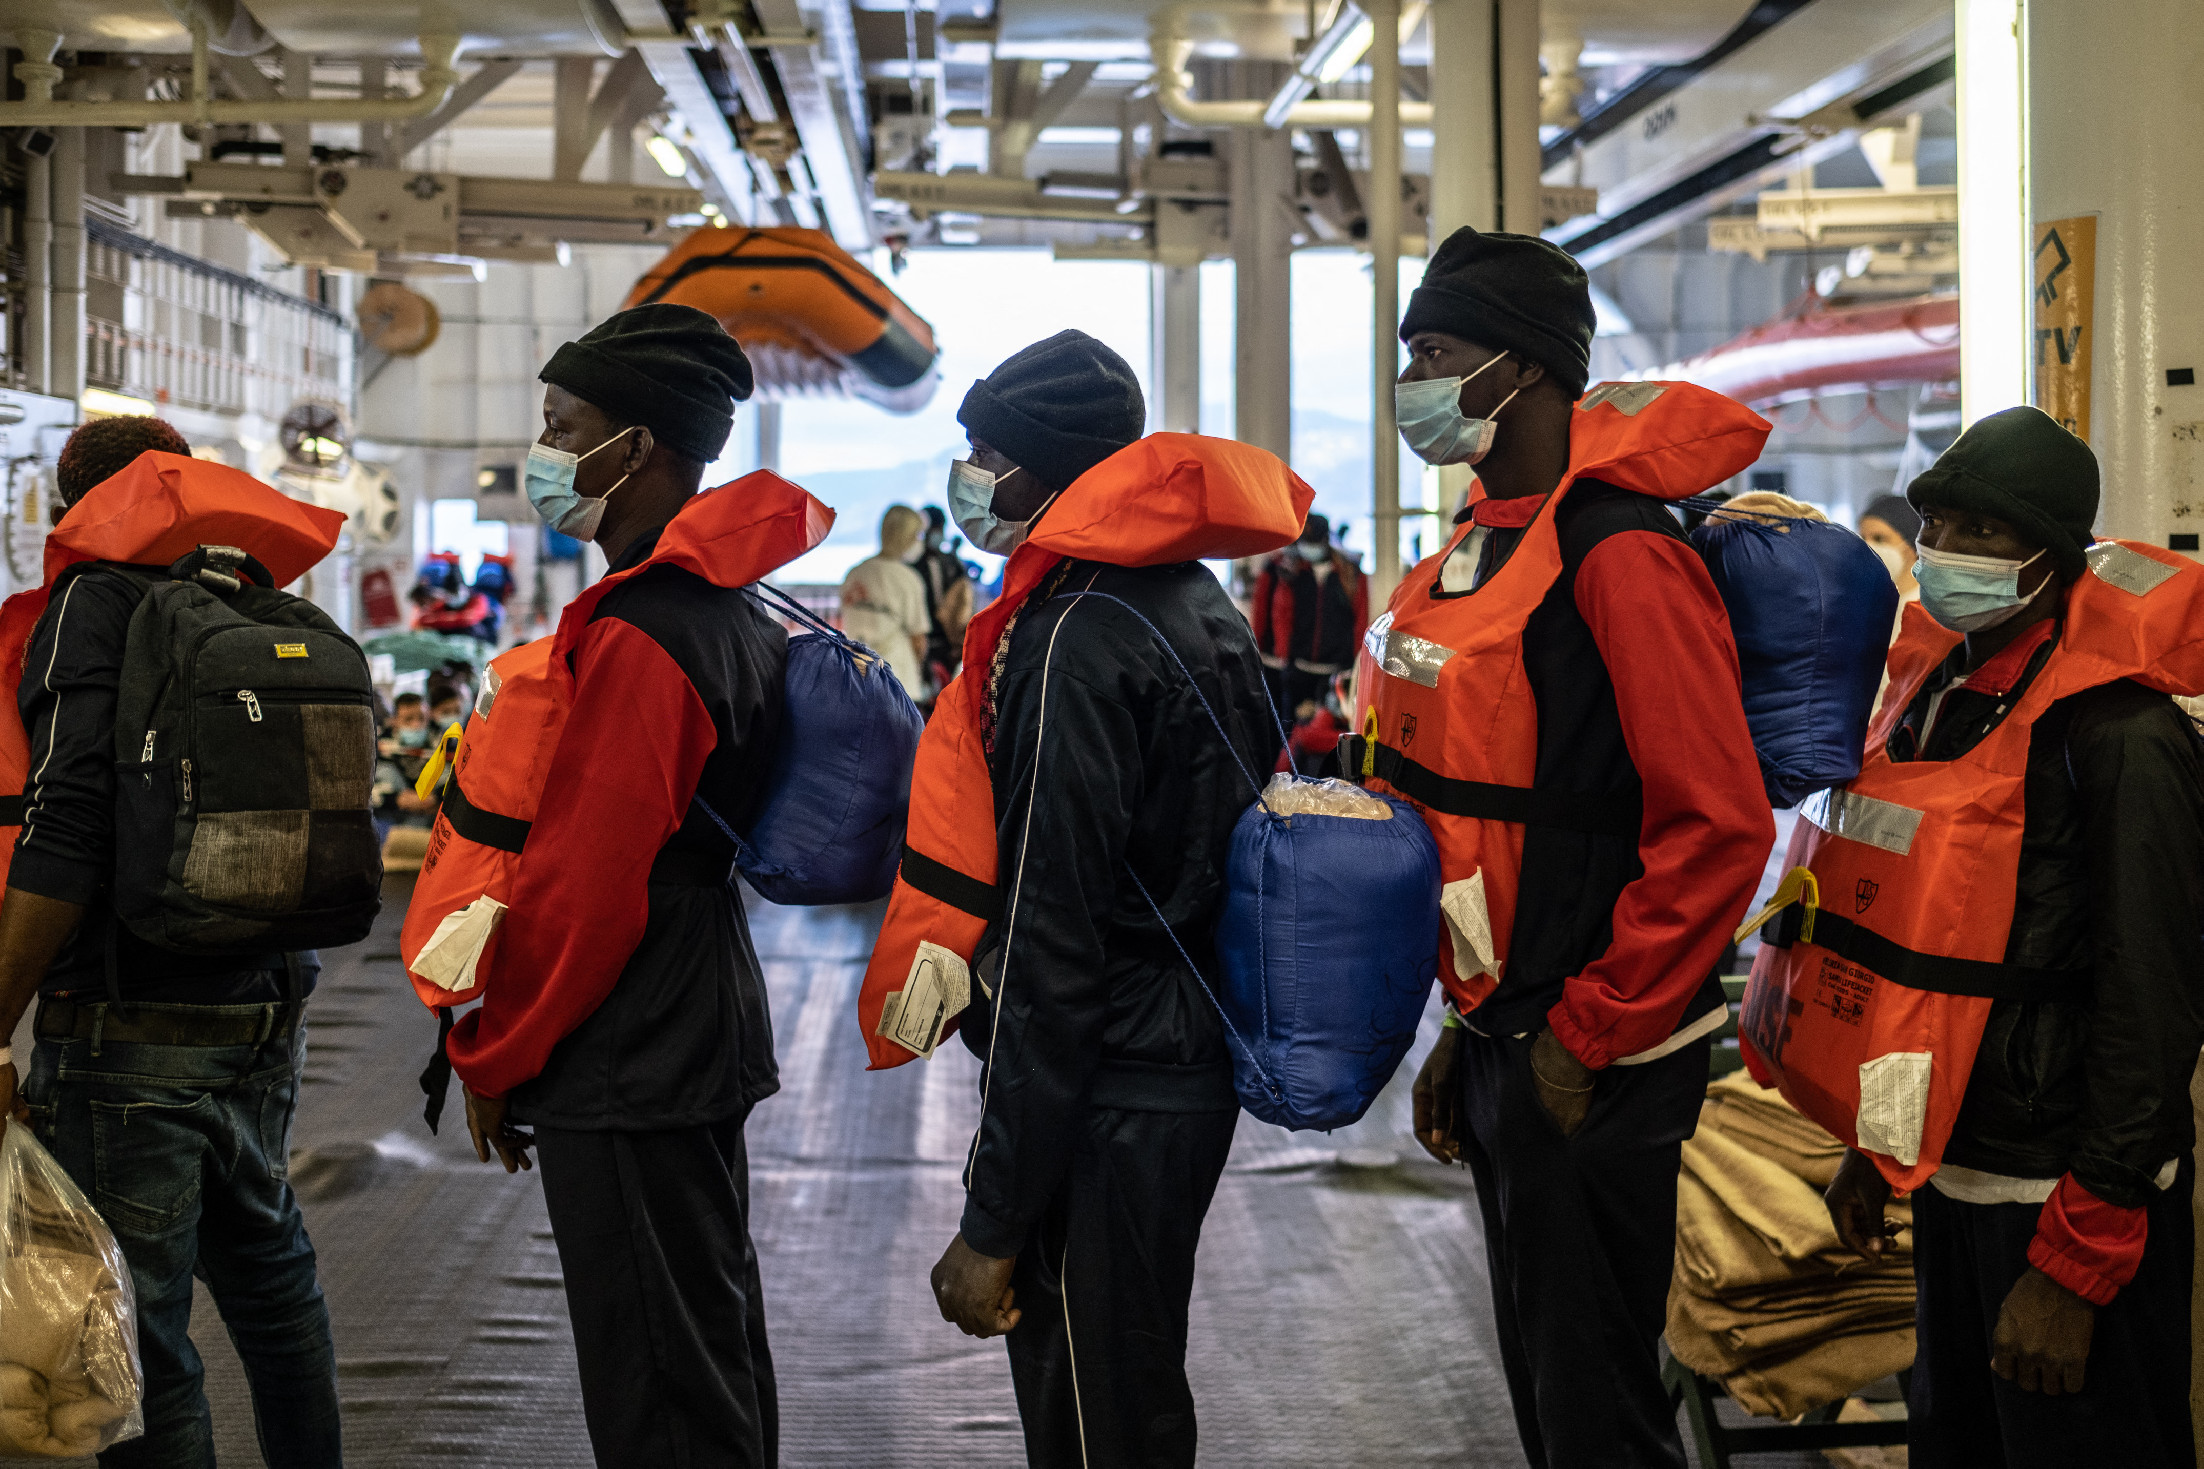 Két országtól kért kikötési engedélyt a több száz migránst szállító hajó